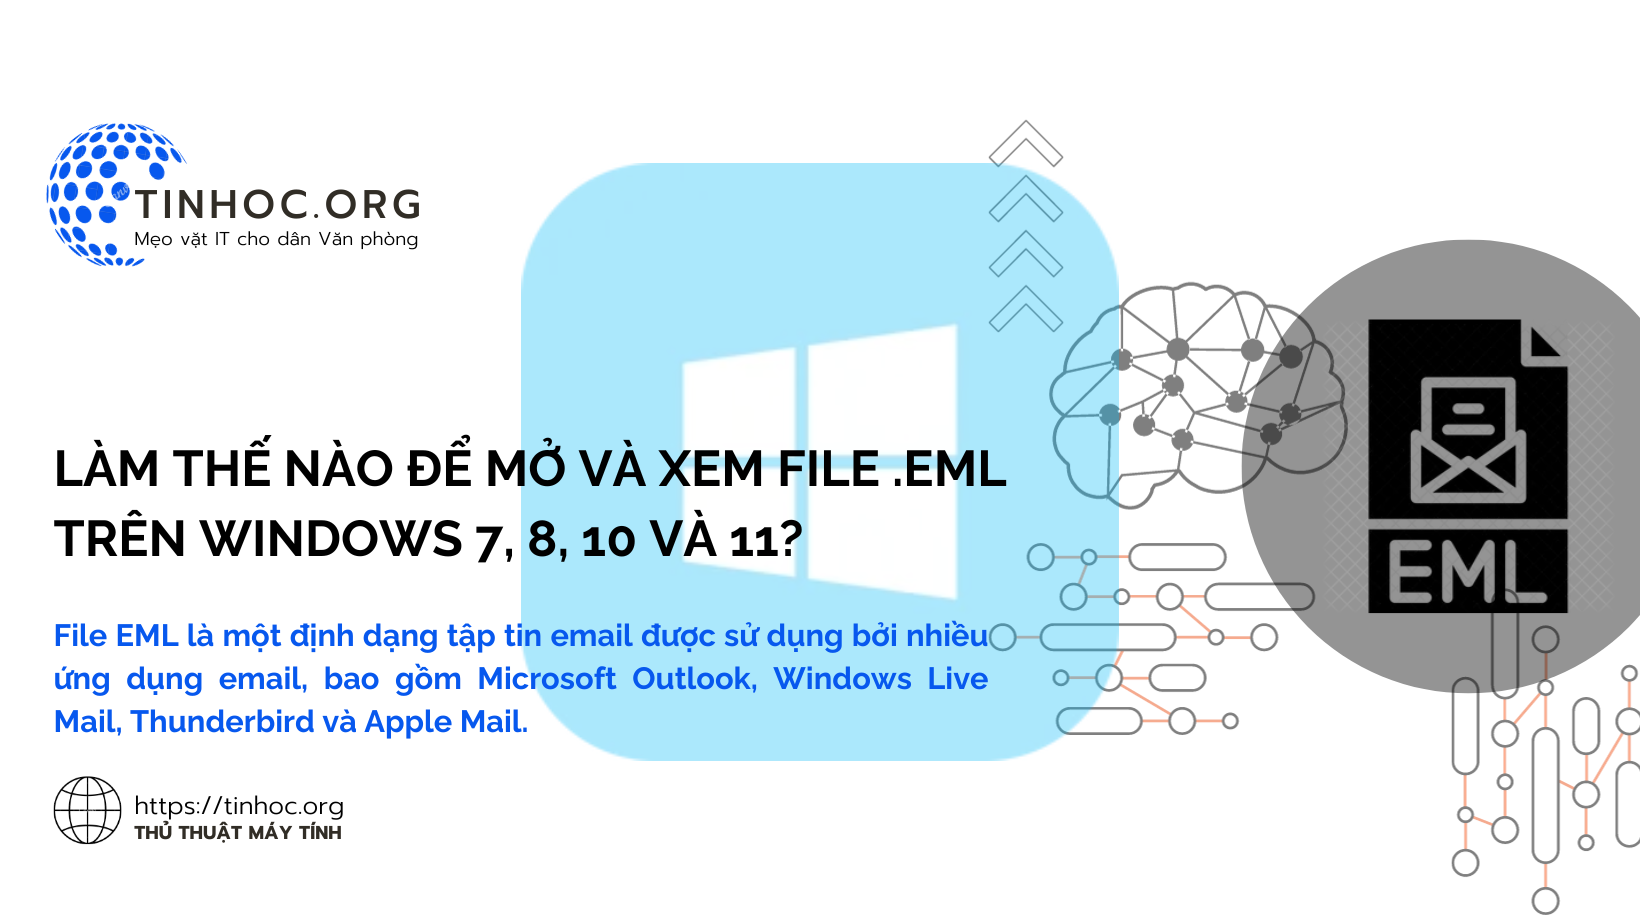 File EML là một định dạng tập tin email được sử dụng bởi nhiều ứng dụng email, bao gồm Microsoft Outlook, Windows Live Mail, Thunderbird và Apple Mail.